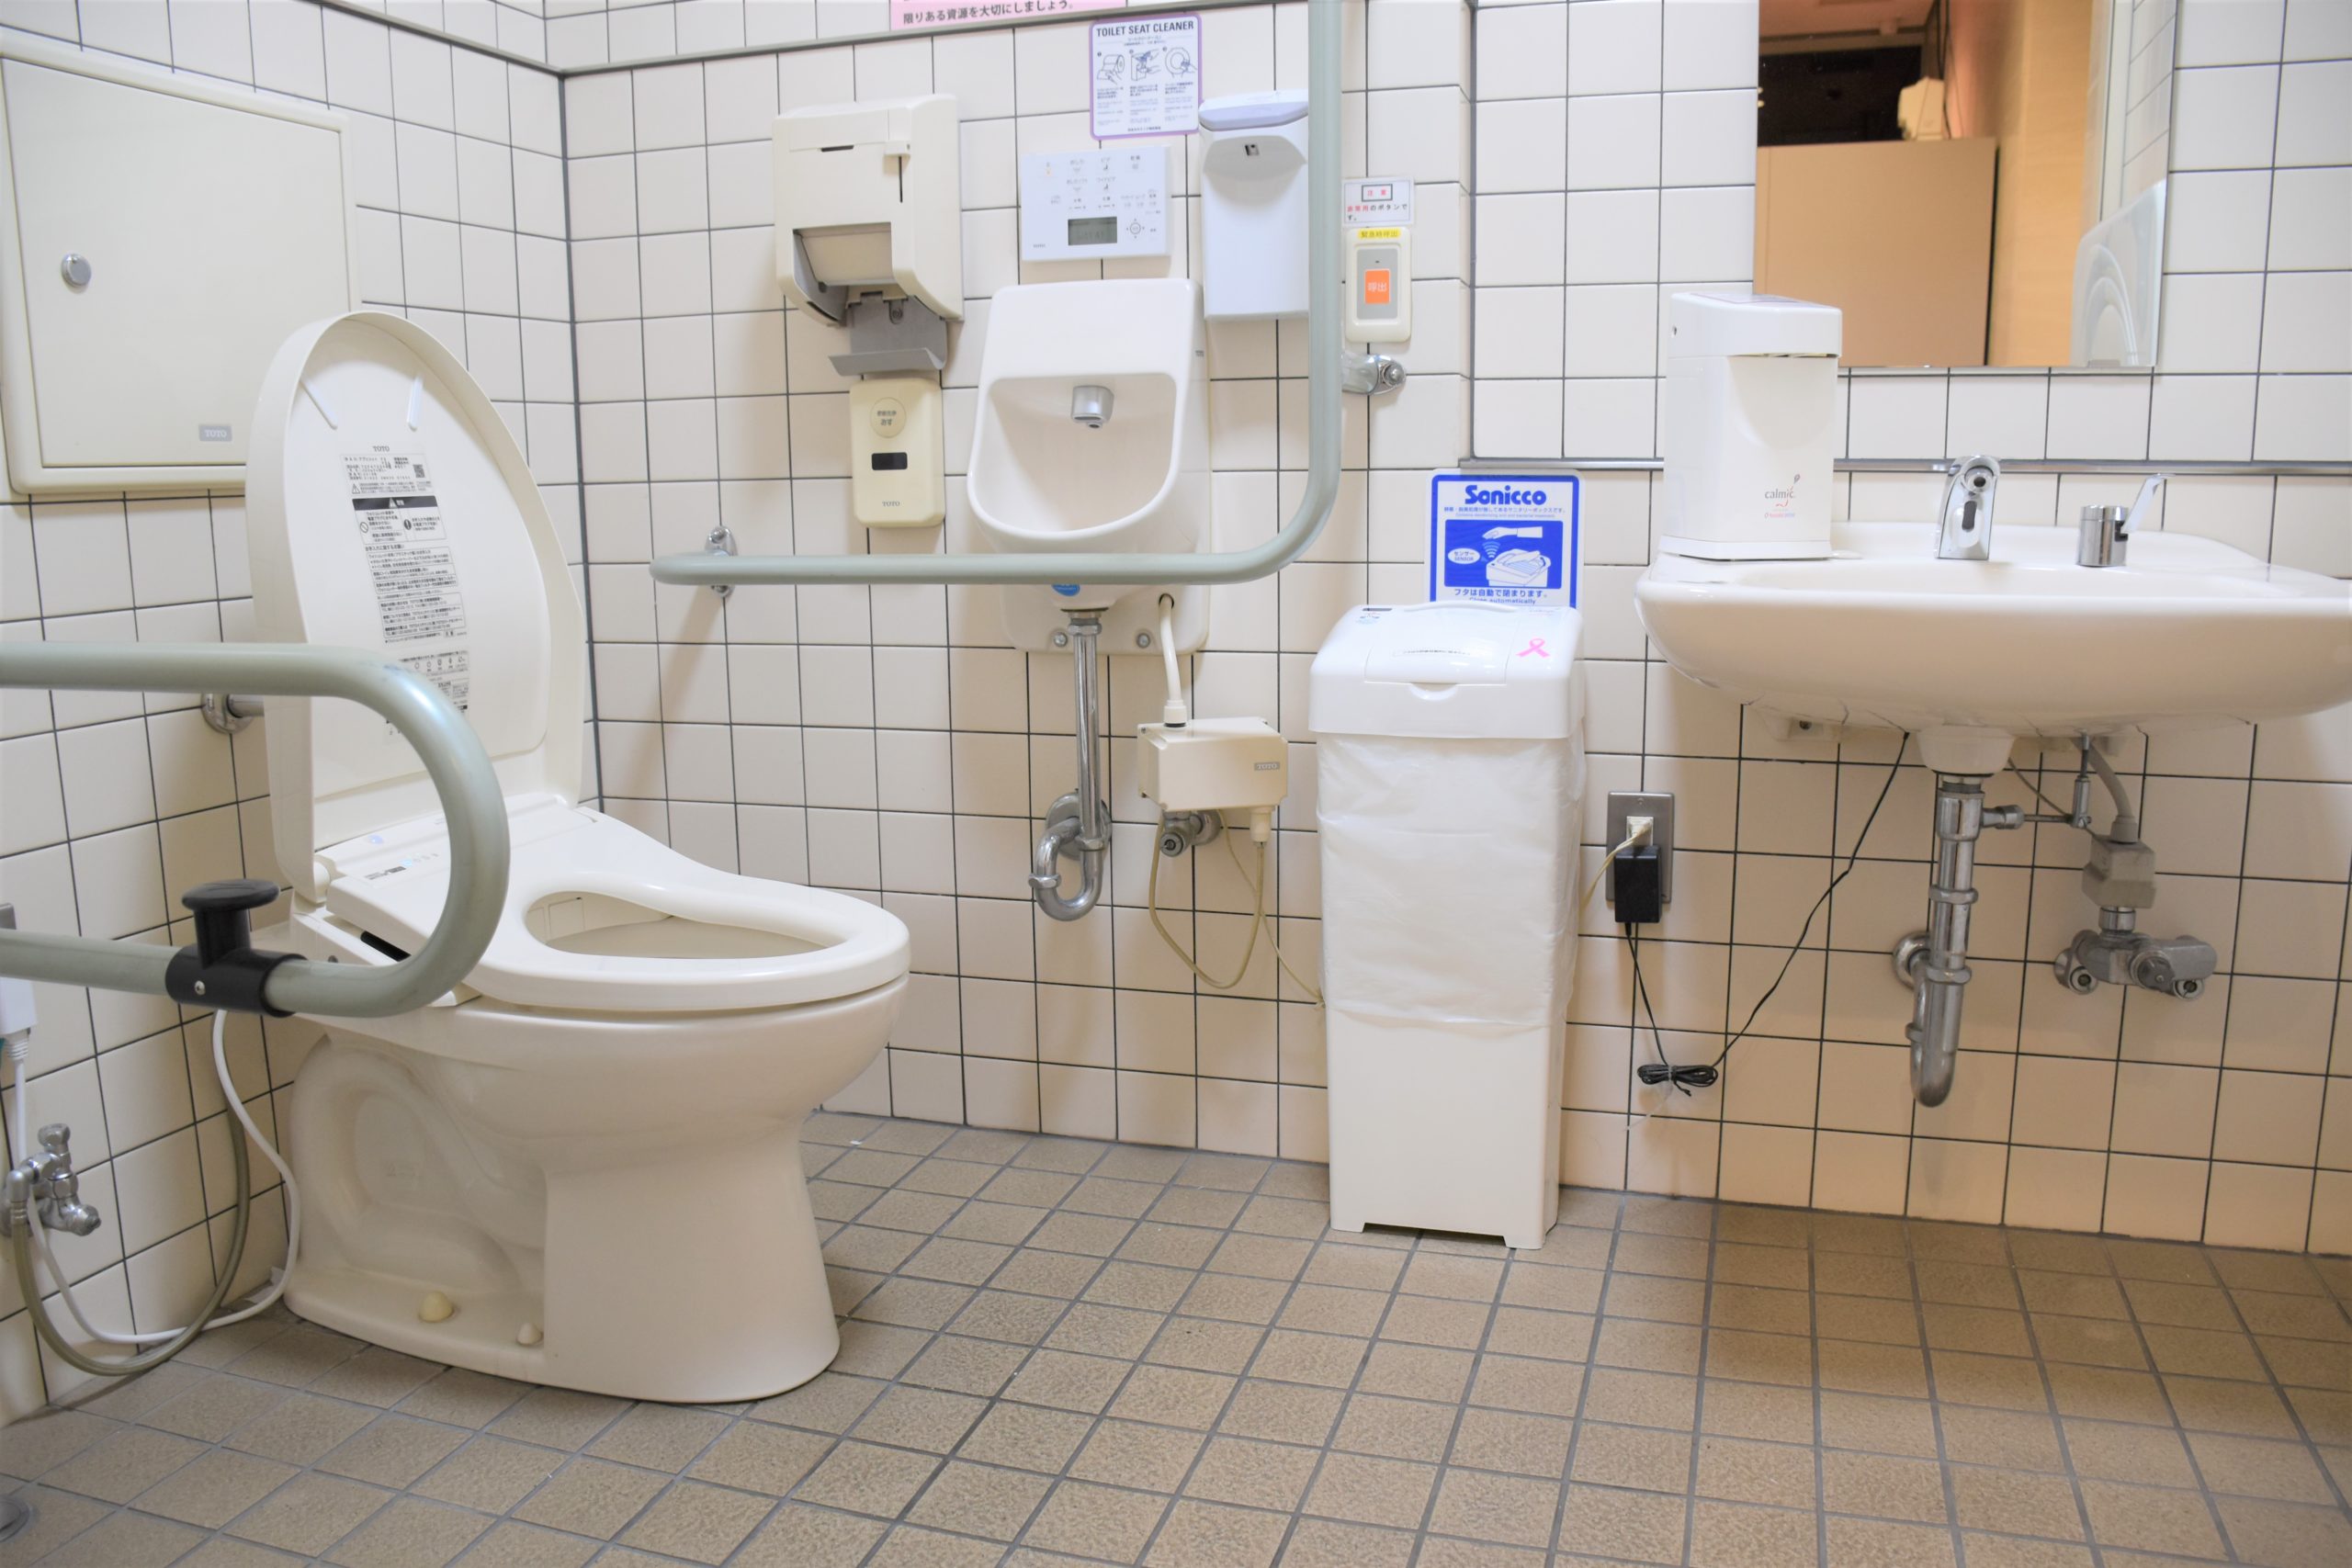 安芸文化センタートイレ中てす左にL字、右にU字の手すりあり 呼び出しボタンあり